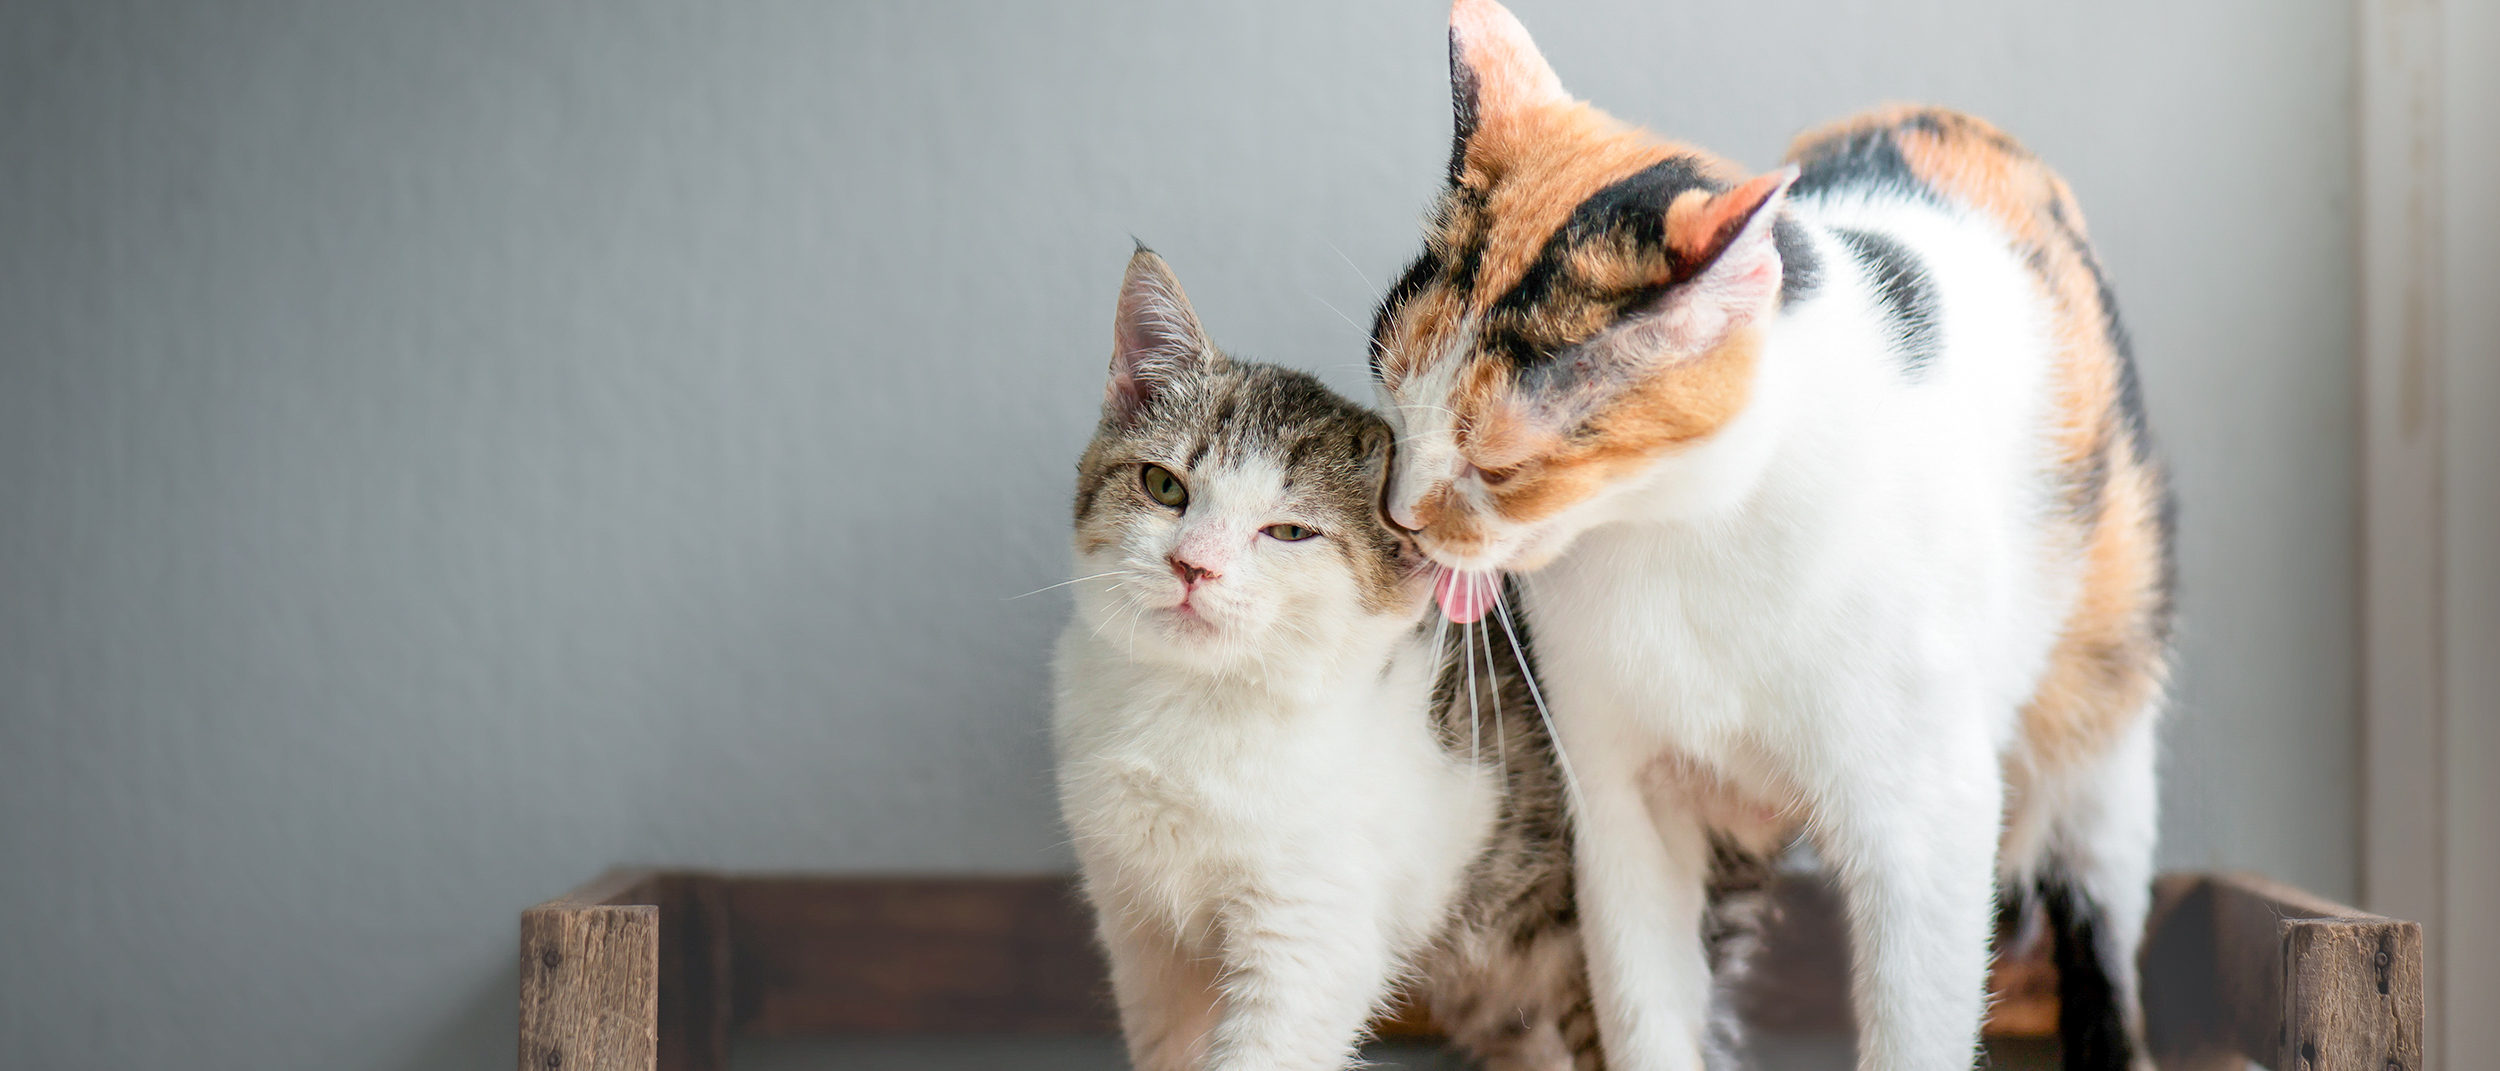 Gato adulto parado junto a un gatito lamiendo su oreja.